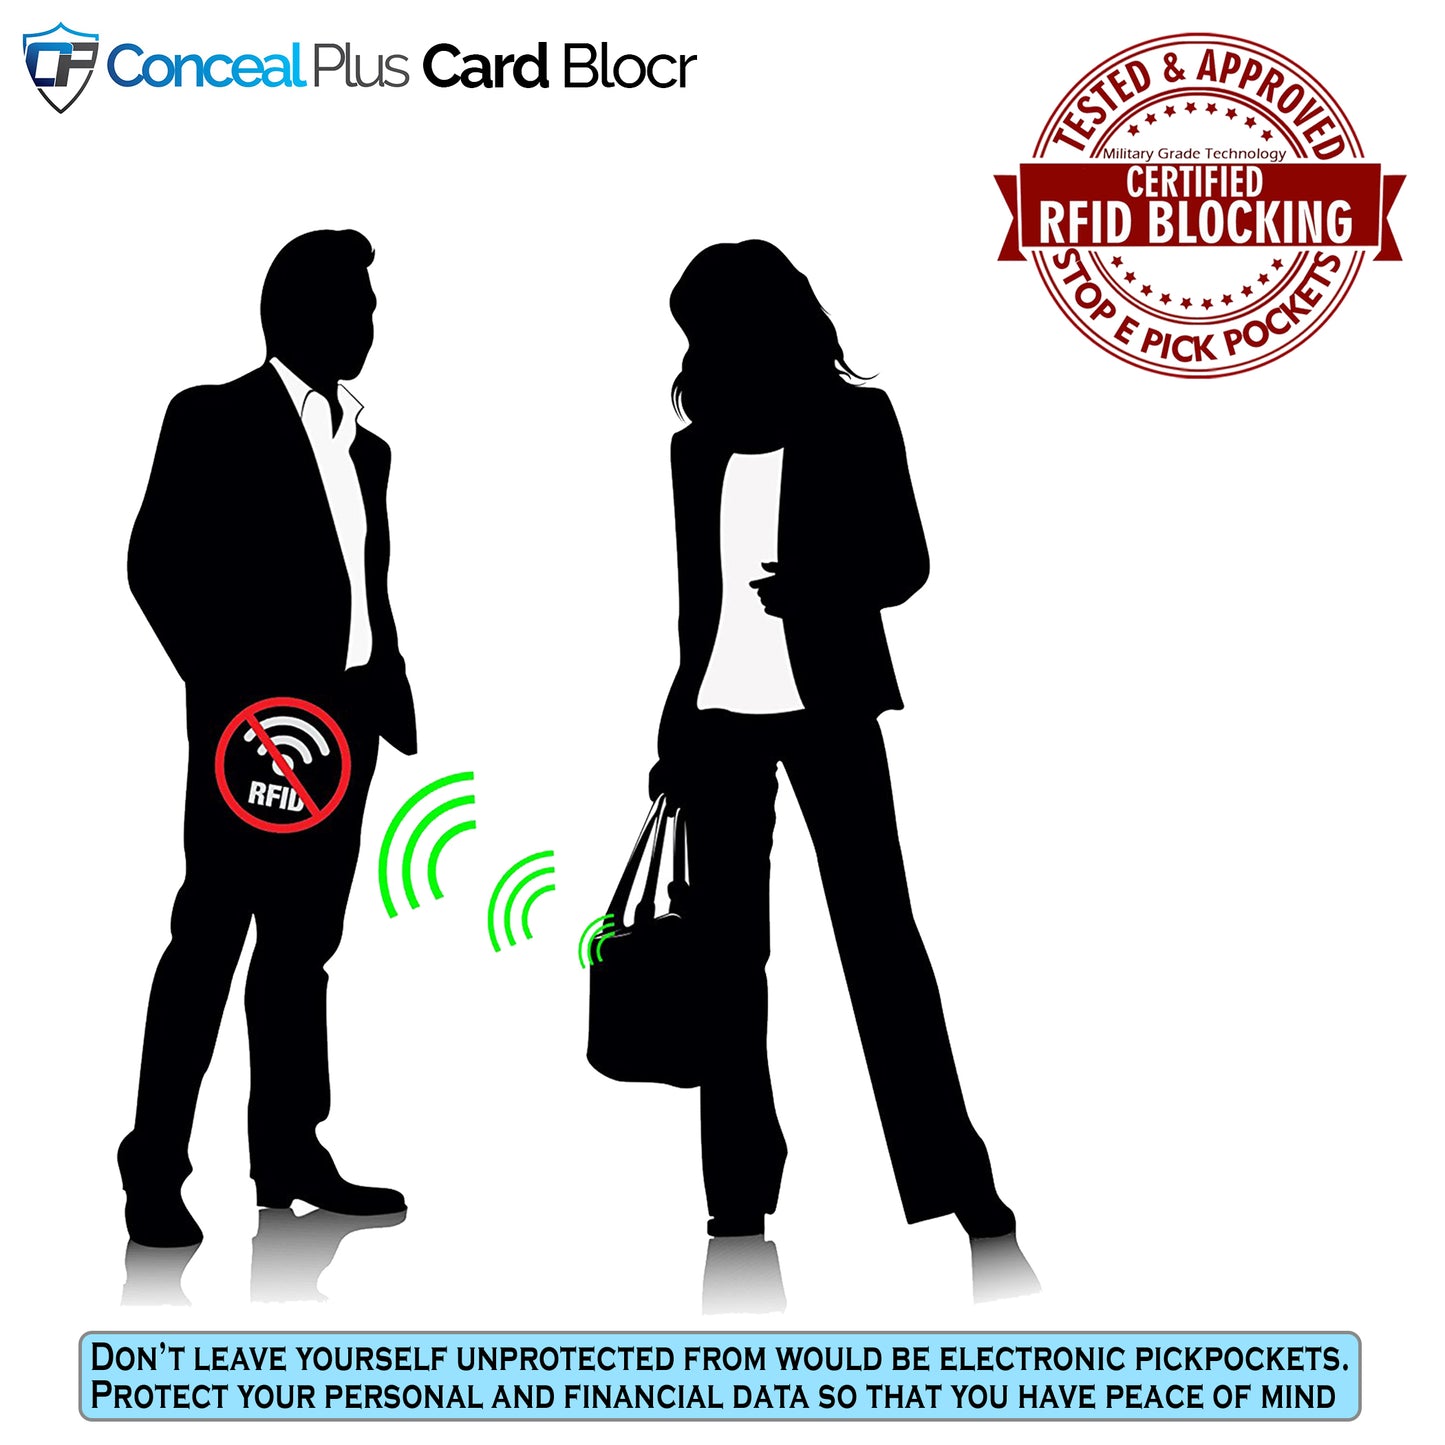 Card Blocr Credit Card Wallet Carbon Fiber PU Leather Titanium Color Minimalist Wallet